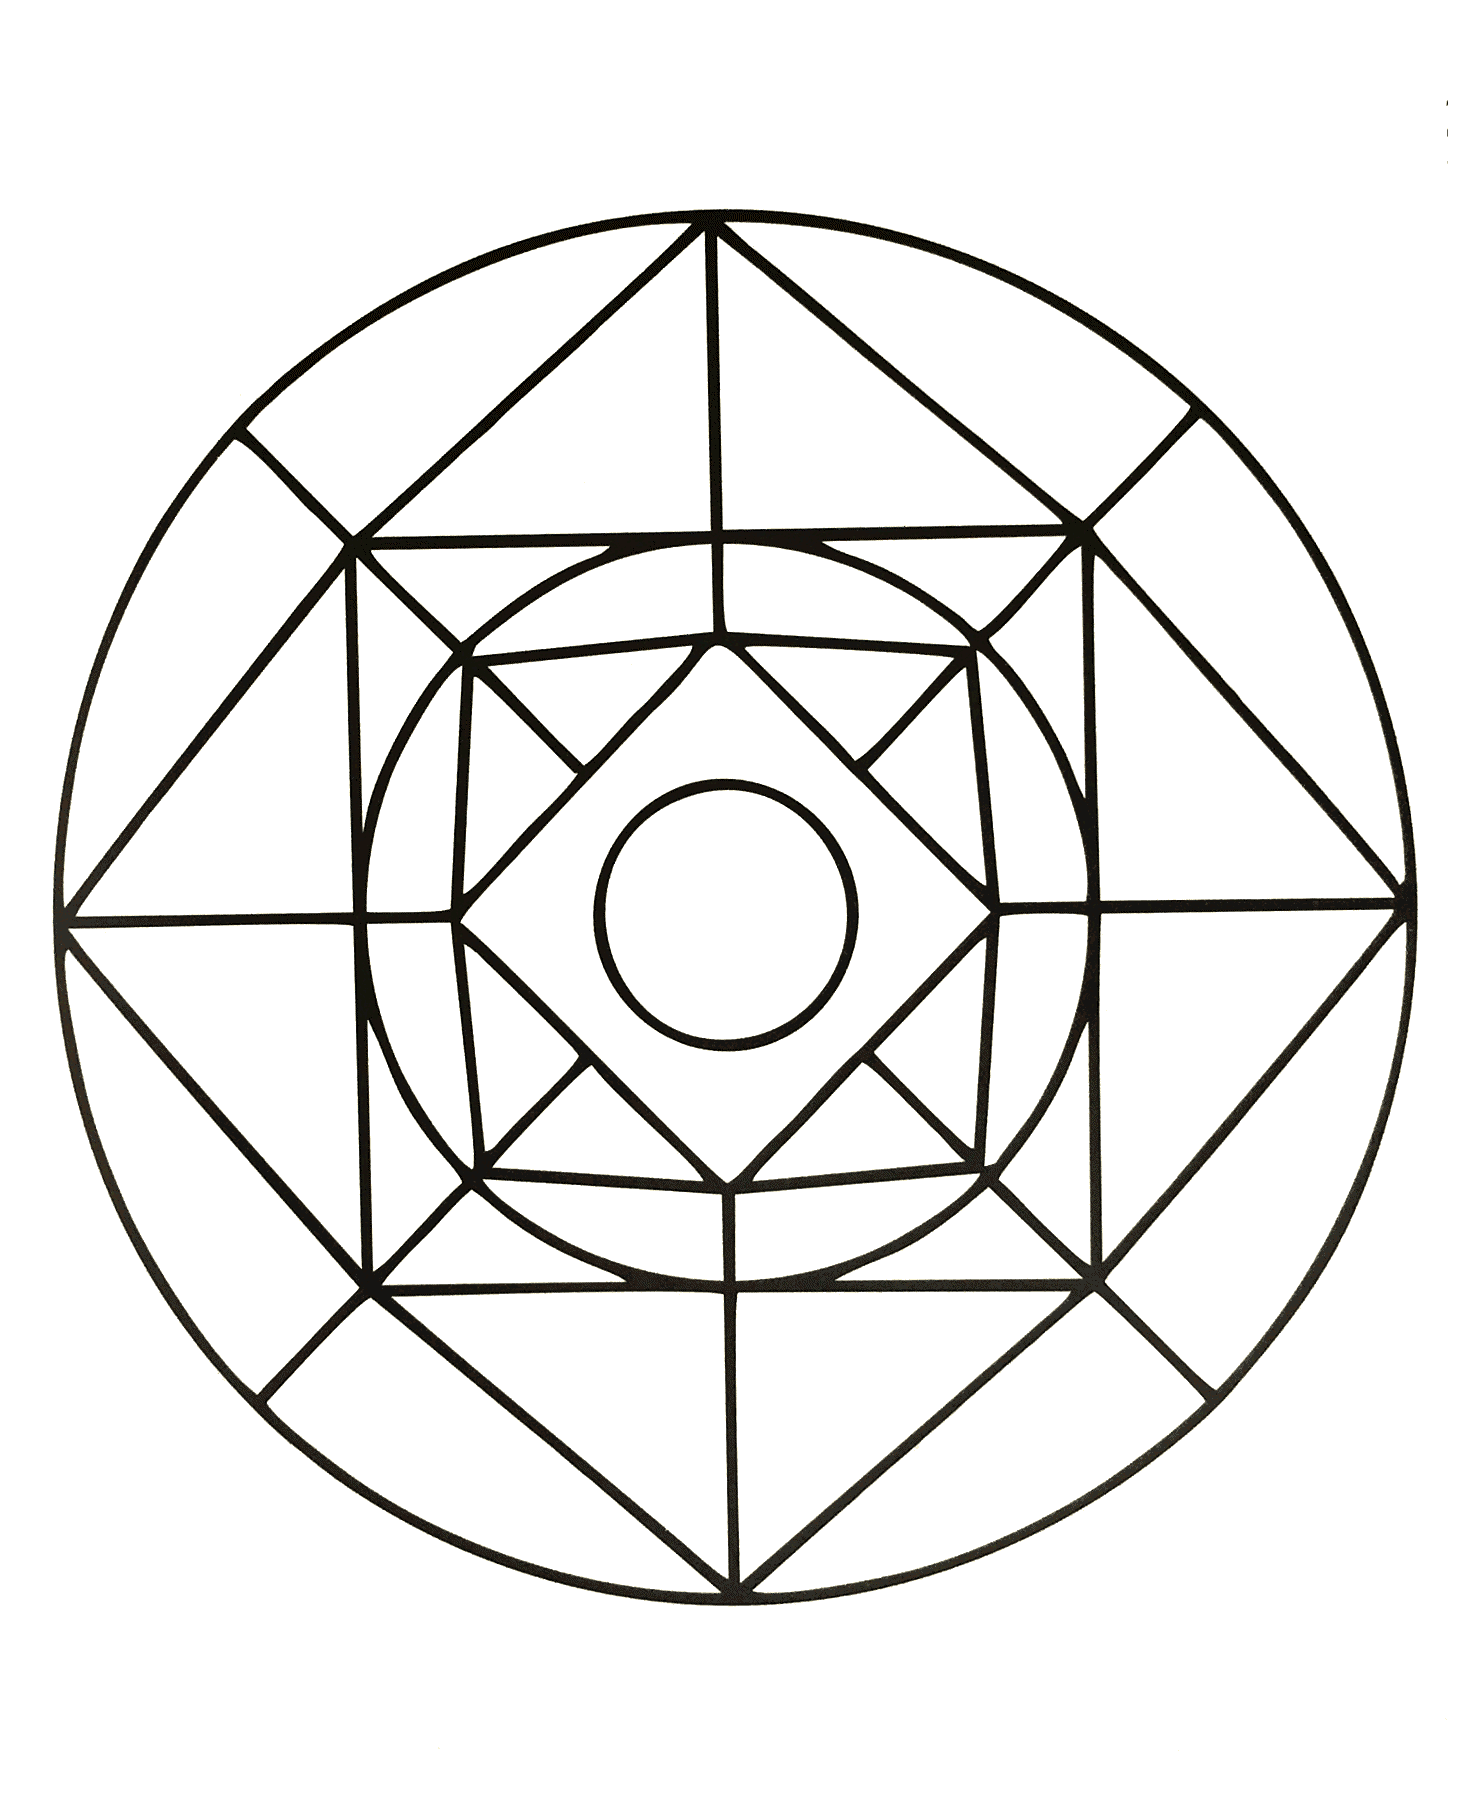 Schönes Mandala in geometrischer Form mit mehreren Quadraten und einem Kreis in der Mitte. Ziemlich einfach auszumalen.